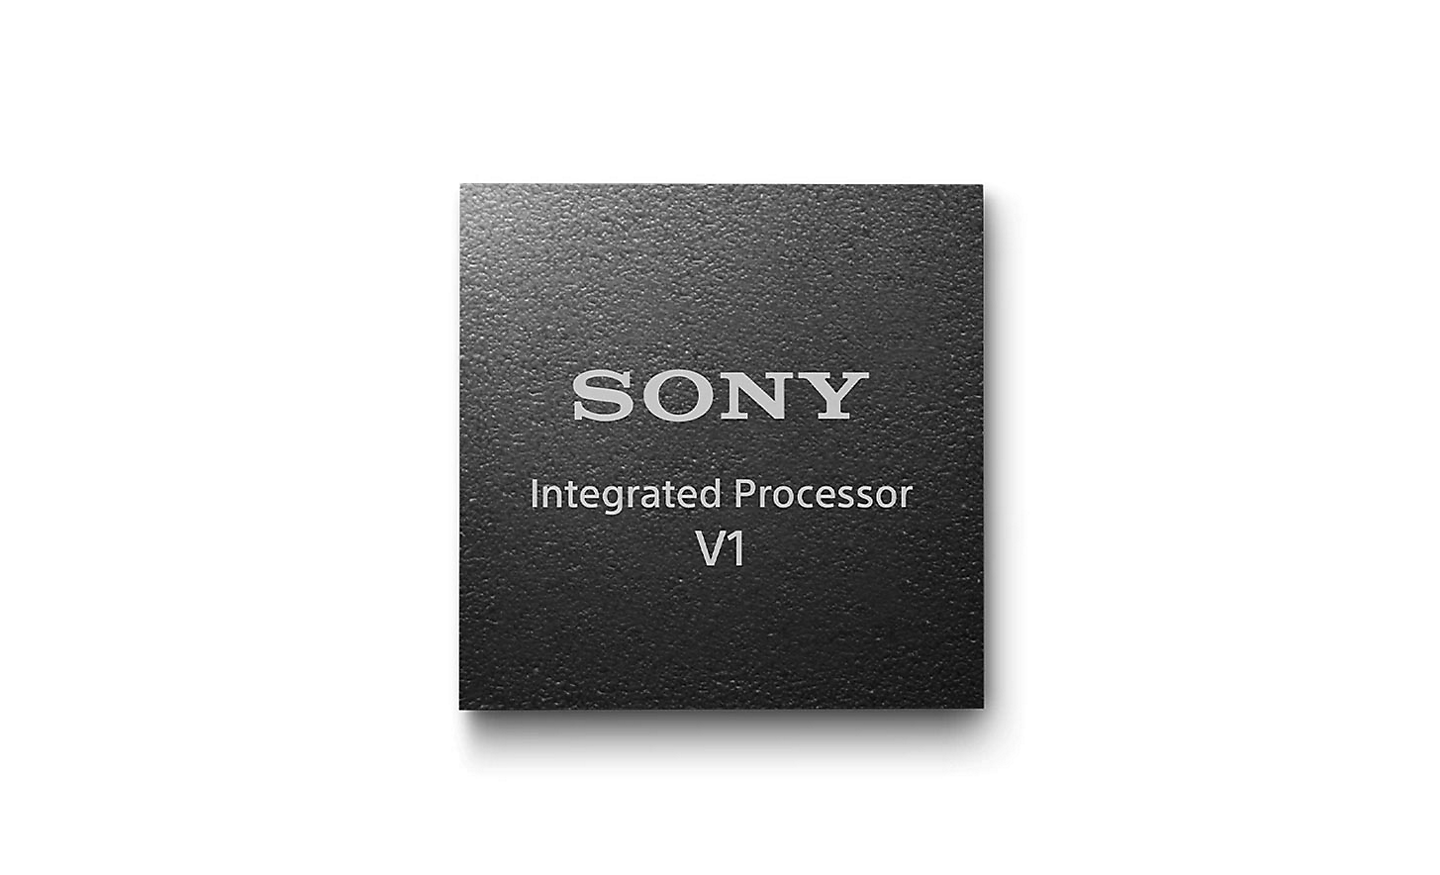 Εικόνα του ενσωματωμένου επεξεργαστή V1 της Sony